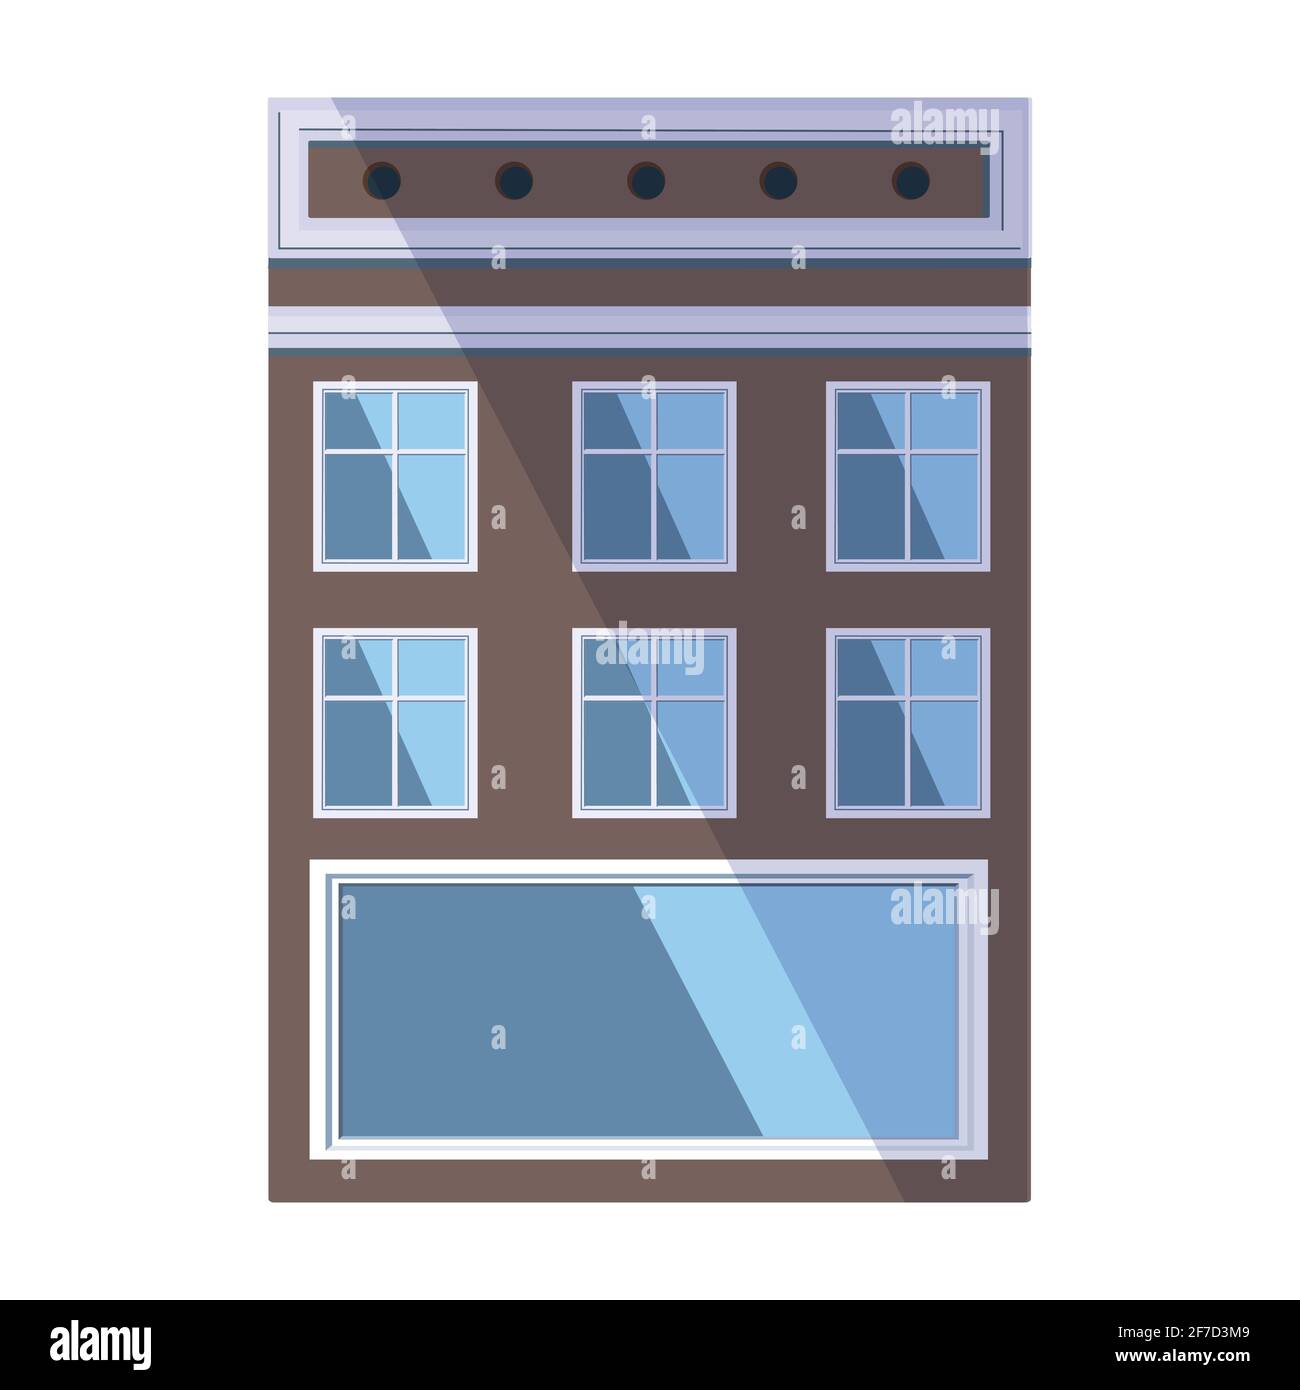 Ancienne maison marron européenne dans le style traditionnel de la ville hollandaise avec un toit de pignon, une fenêtre carrée mansardée et de grandes fenêtres de style loft. Illustration vectorielle Illustration de Vecteur